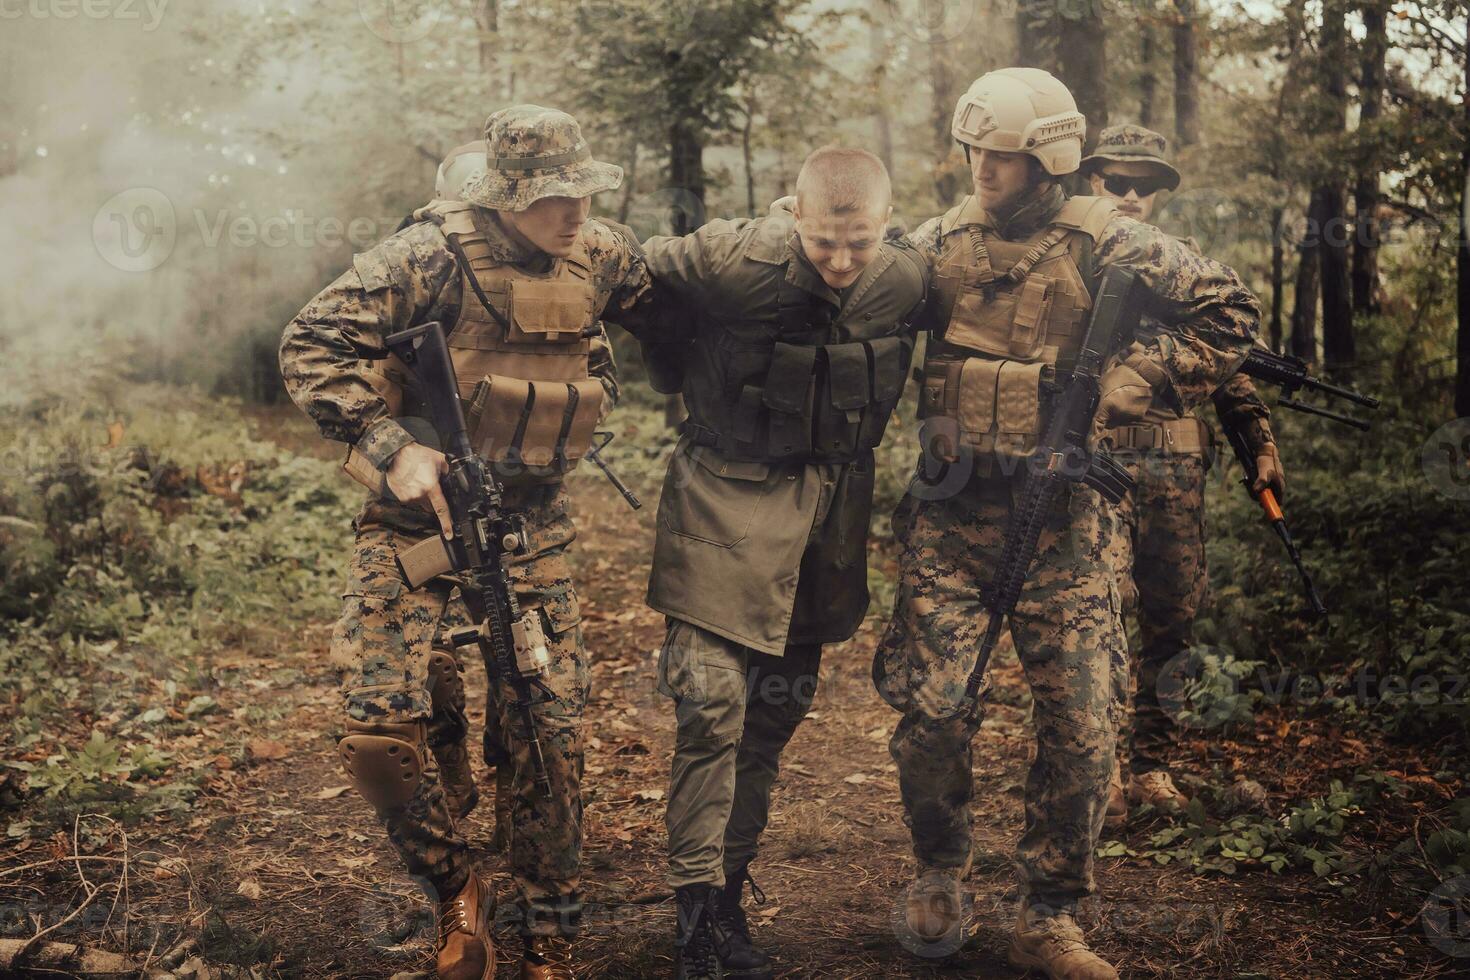 soldats équipe a été Capturer vivant terroriste et interrogatoire leur sur leur sur spécial tactique violent façon photo